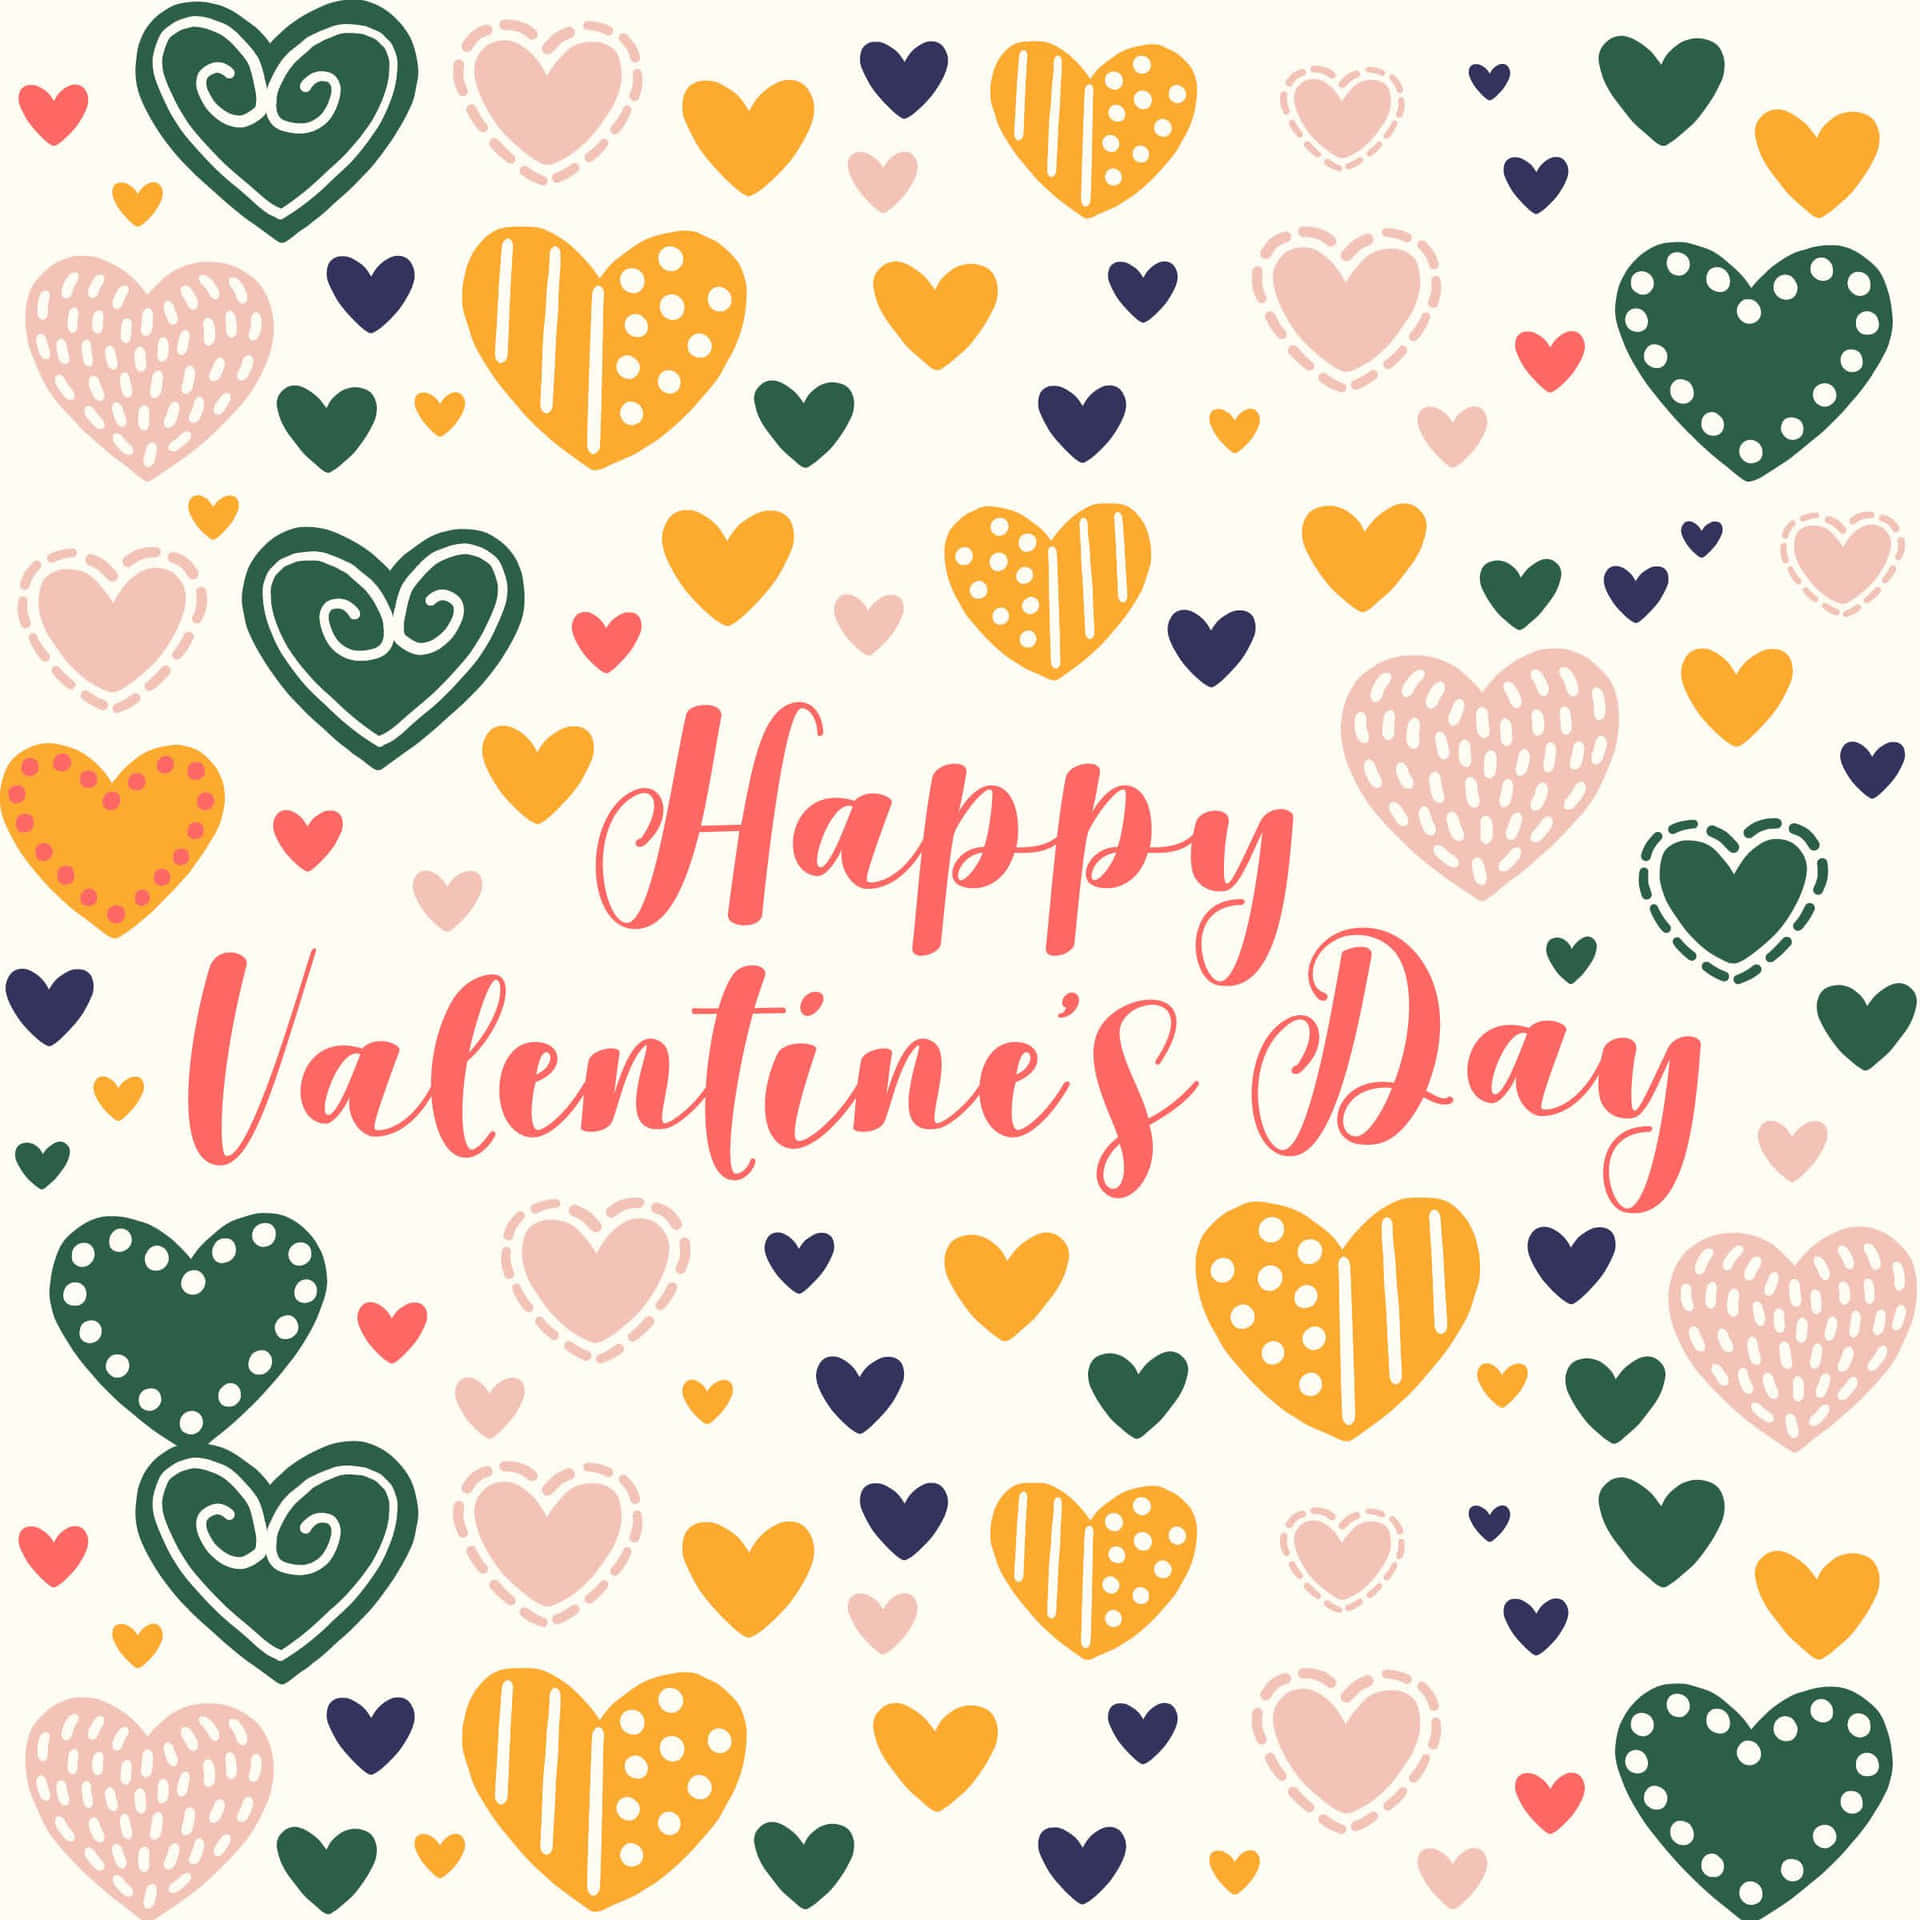 Lindaimagen De Corazones Coloridos Para Enviar Felicitaciones Por El Día De San Valentín